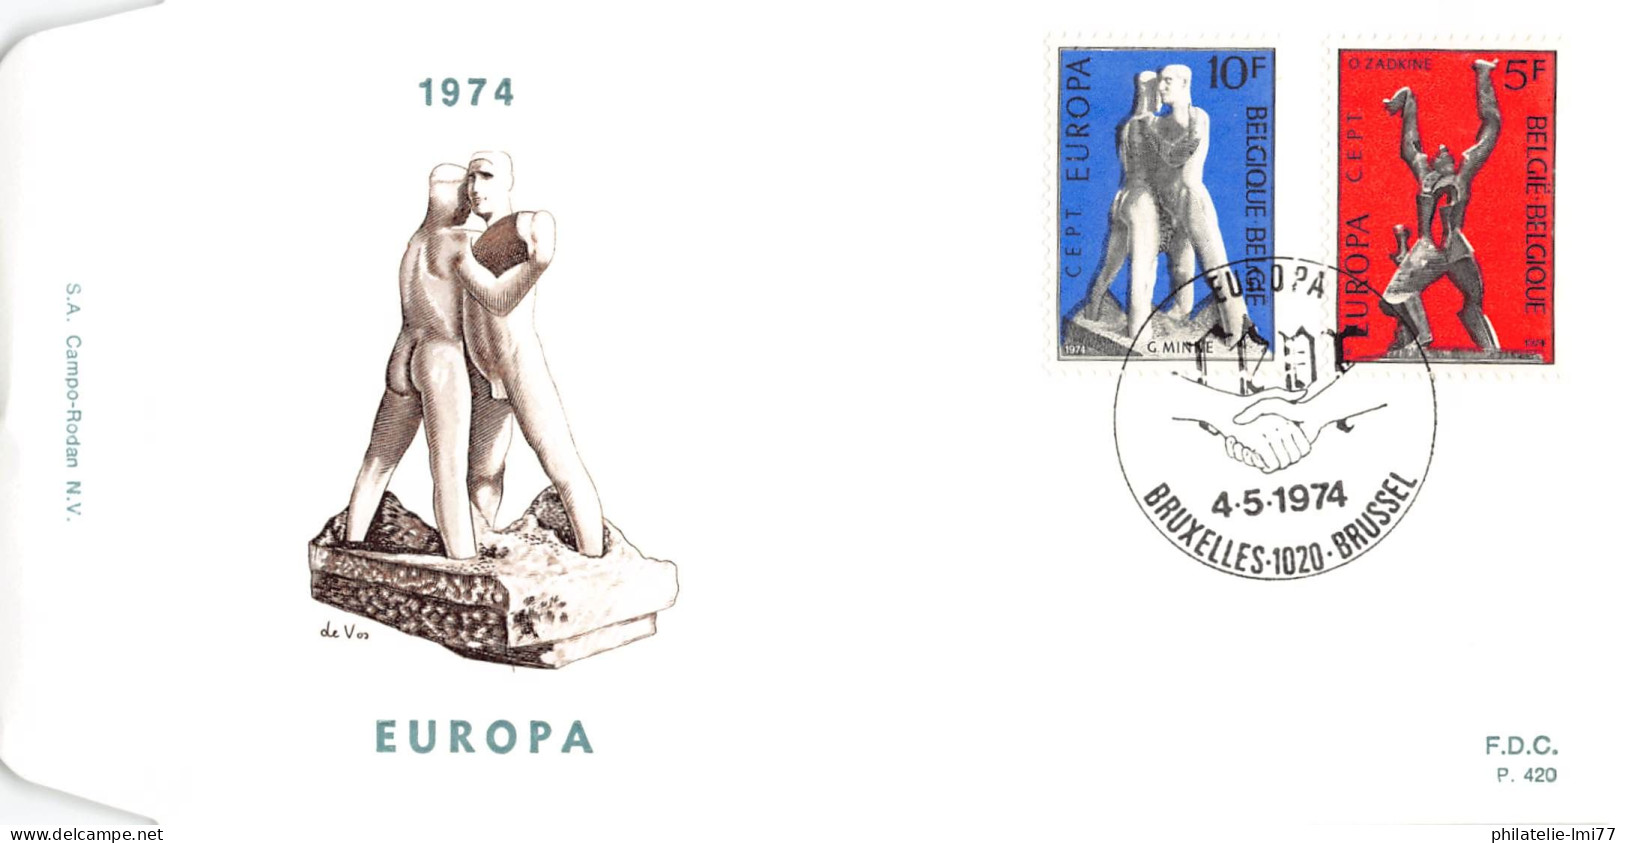 Belgique - FDC Europa 1974 - 1974